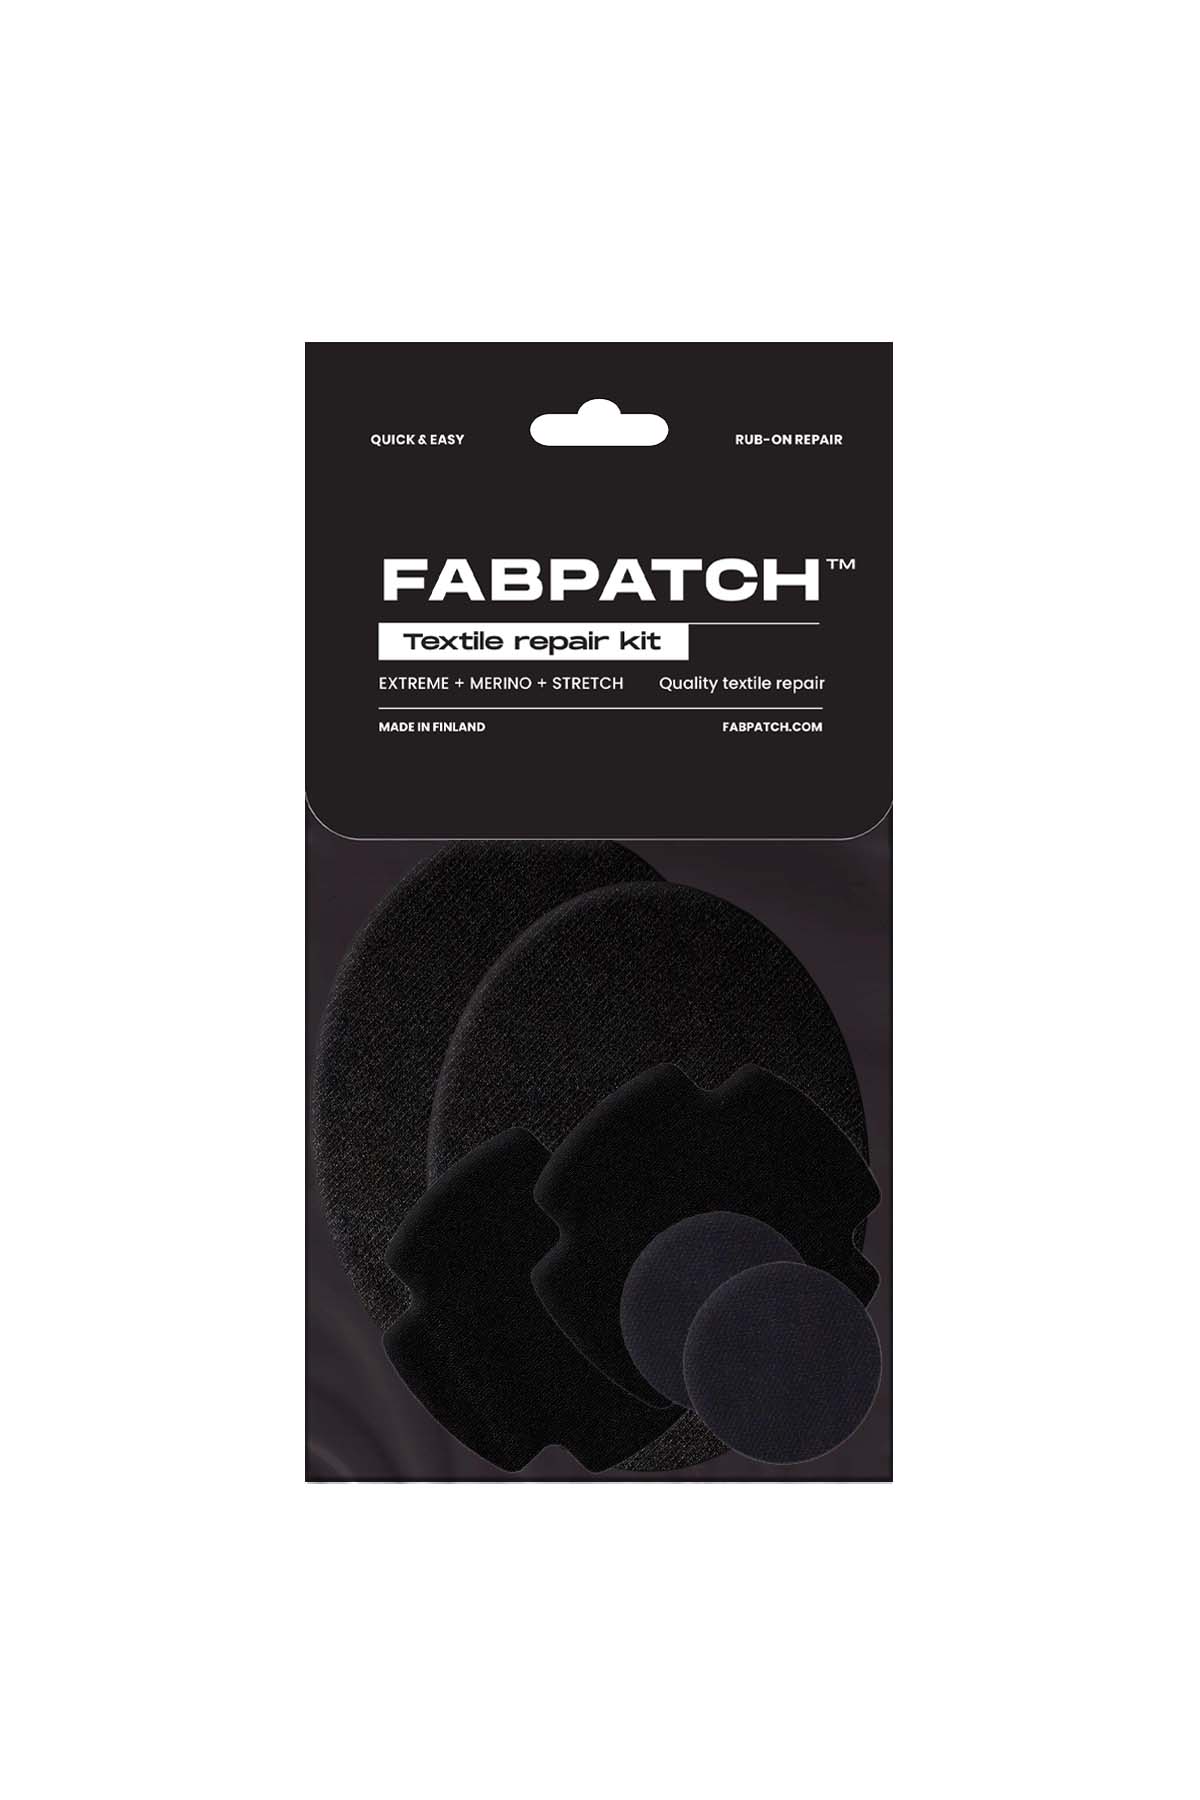 FABPATCH Textile repair kit